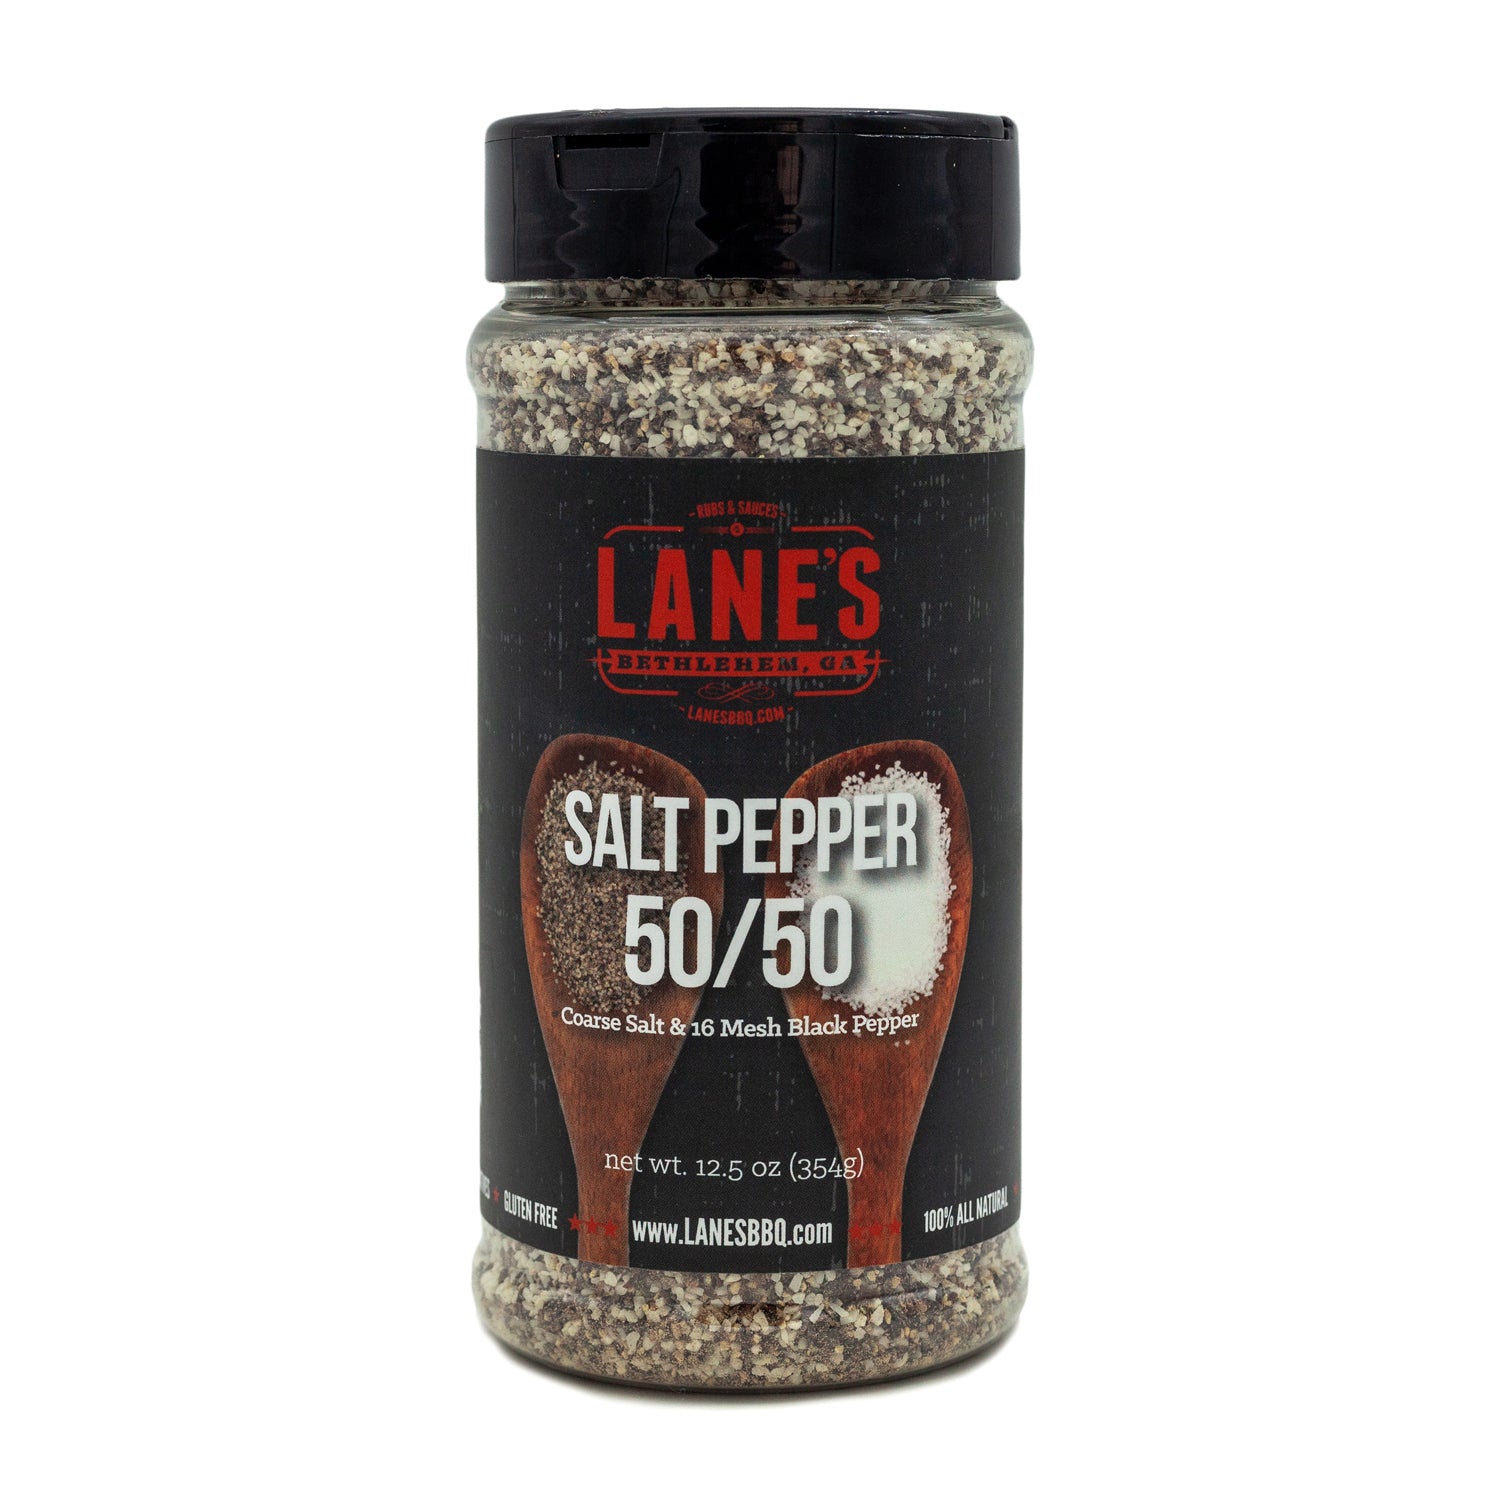 http://lanesbbq.com/cdn/shop/files/salt-pepper-front.jpg?v=1692972960&width=2048